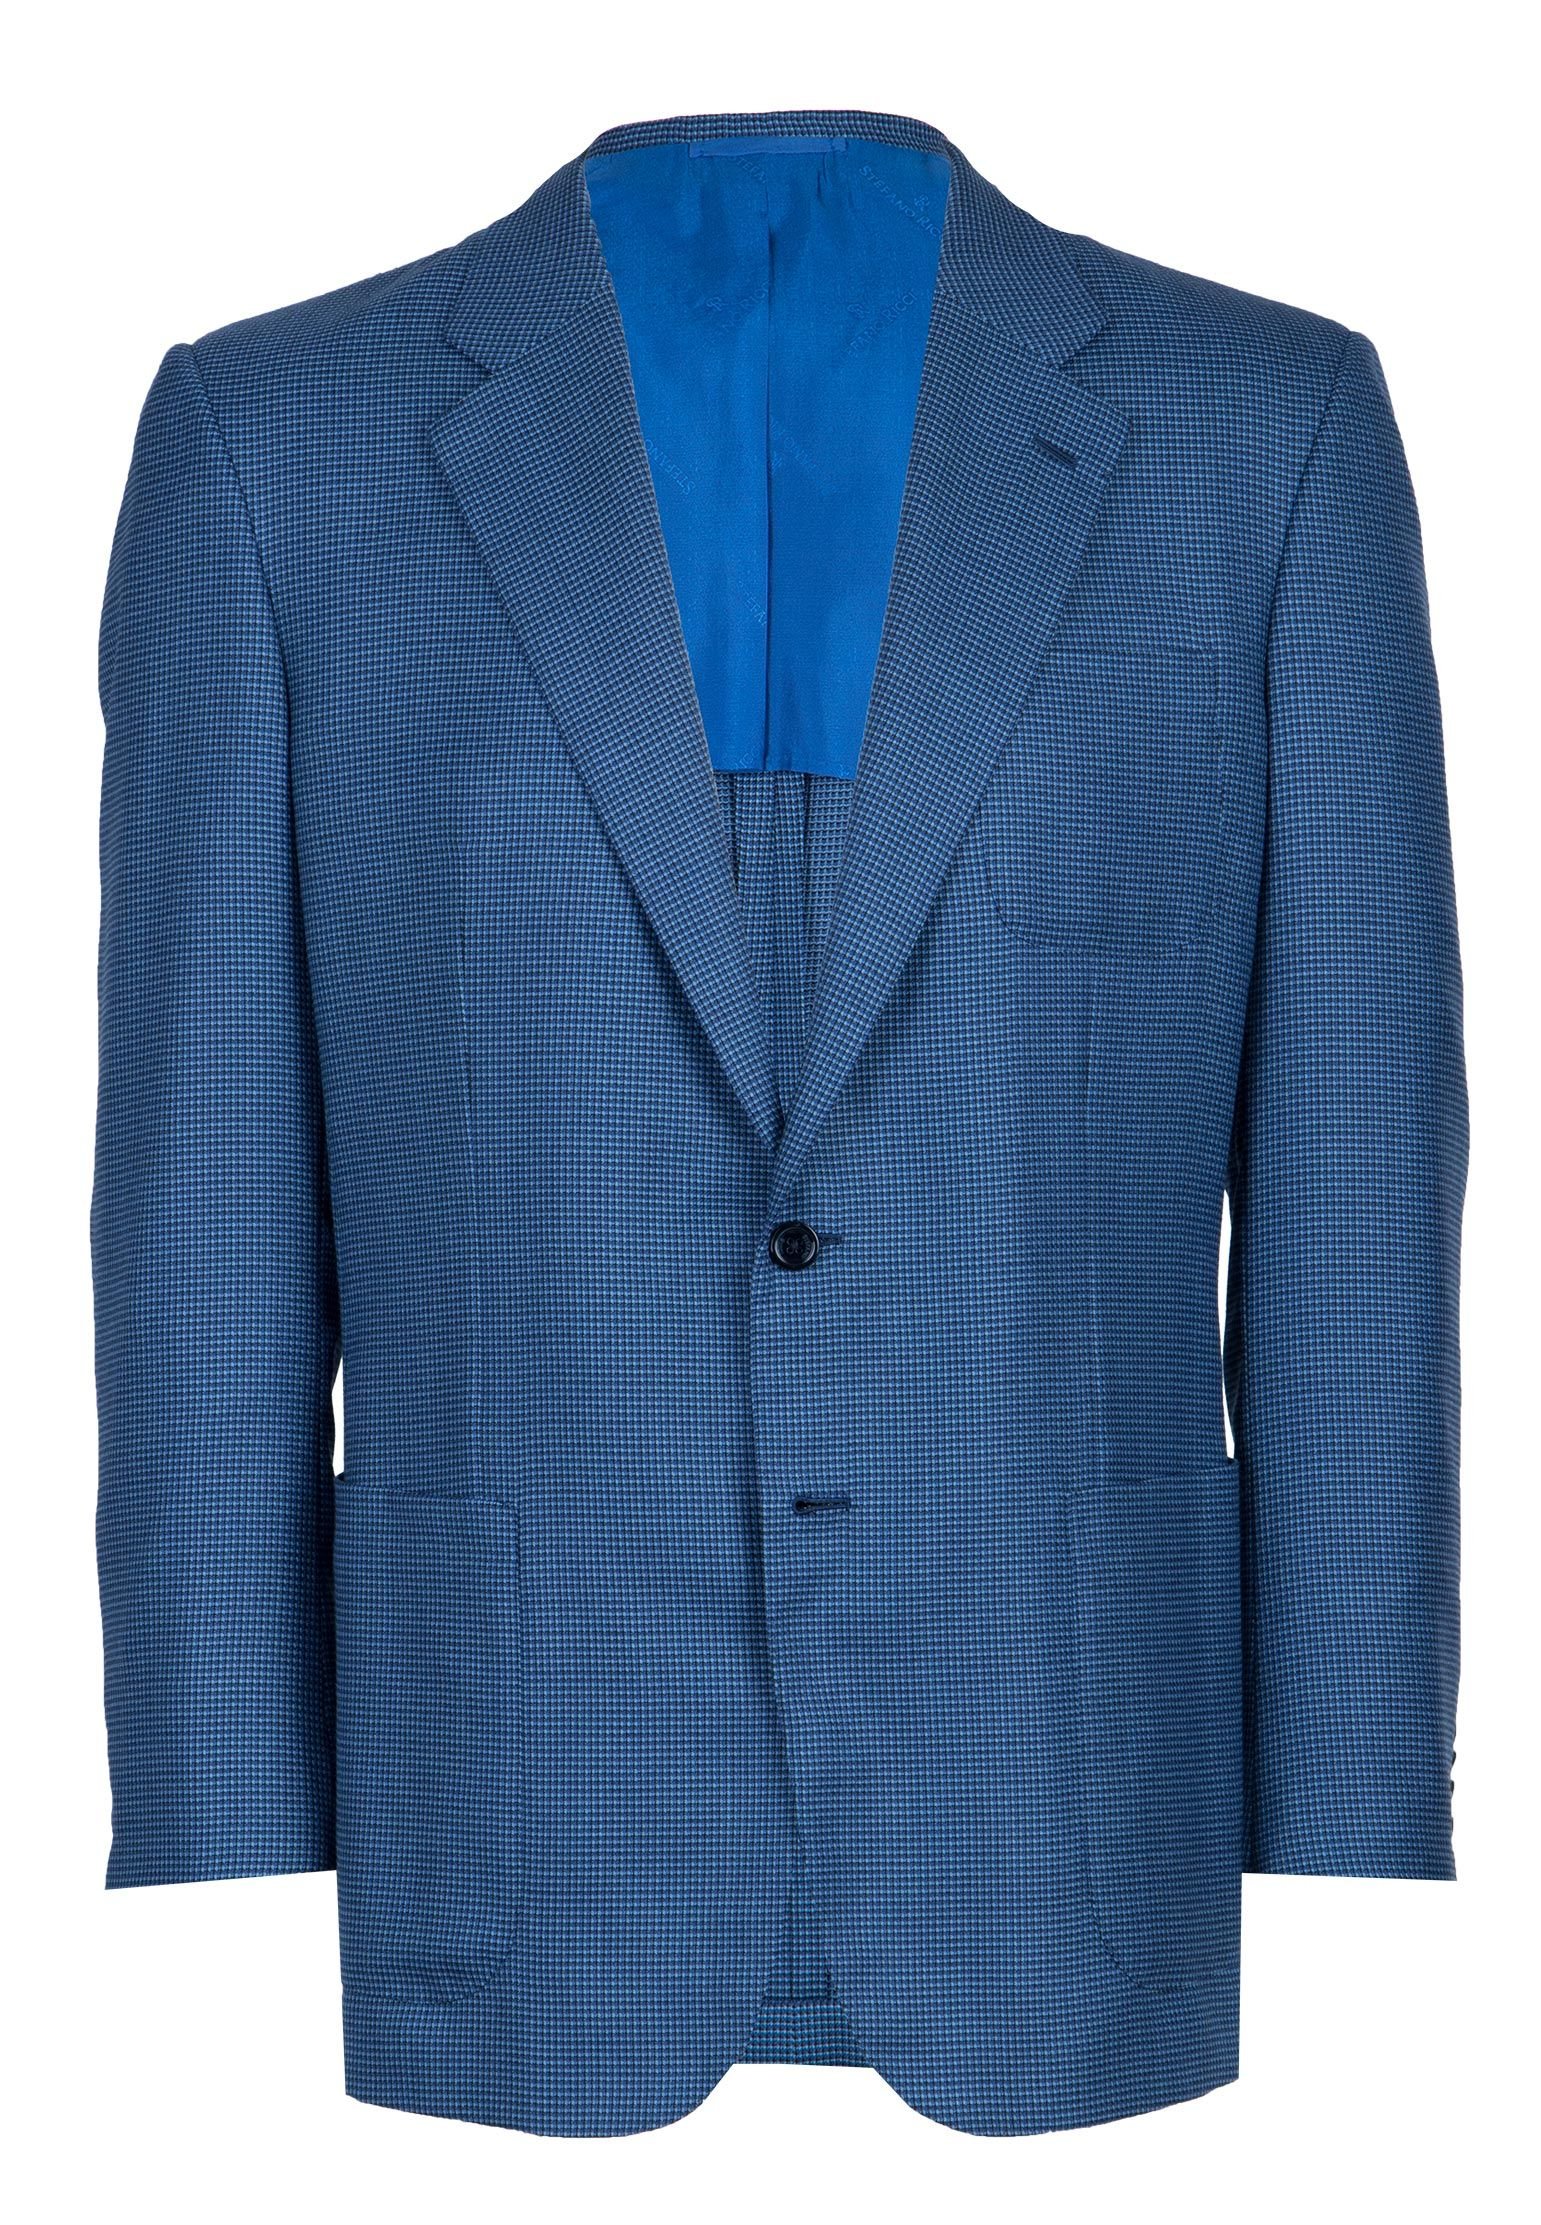 Шерстяной пиджак STEFANO RICCI Голубой 92554 